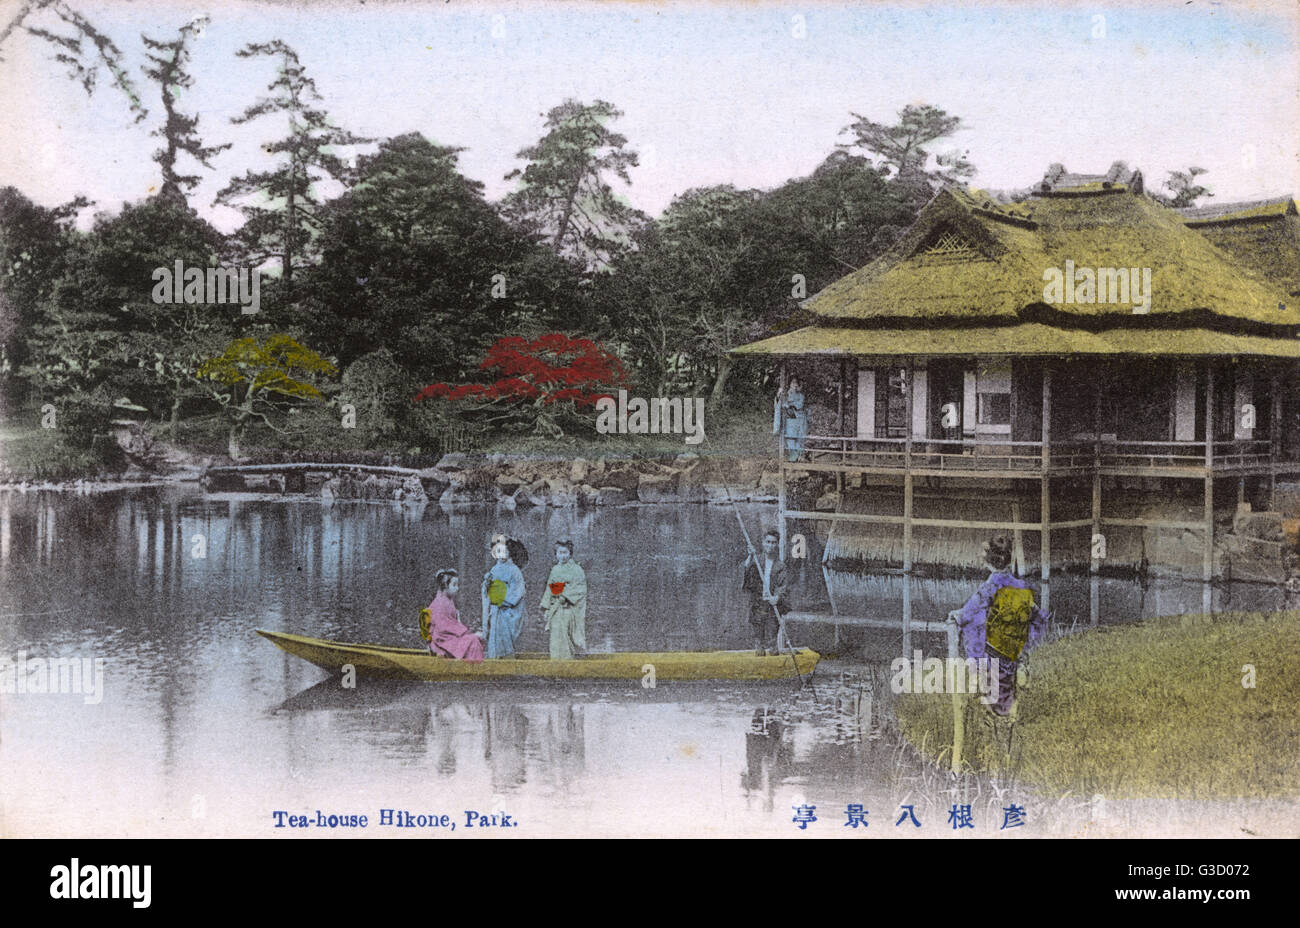 Teahouse a Genkyu-en (Genkyuen) GIARDINO, situato ai piedi del castello di Hikone, una città sul bordo orientale del Lago Biwa nella prefettura di Shiga, Giappone centrale. Il parco contiene un esteso terreno di villa costruita in stile Dinastia Cinese Tang nel 1677 per Naoo Foto Stock